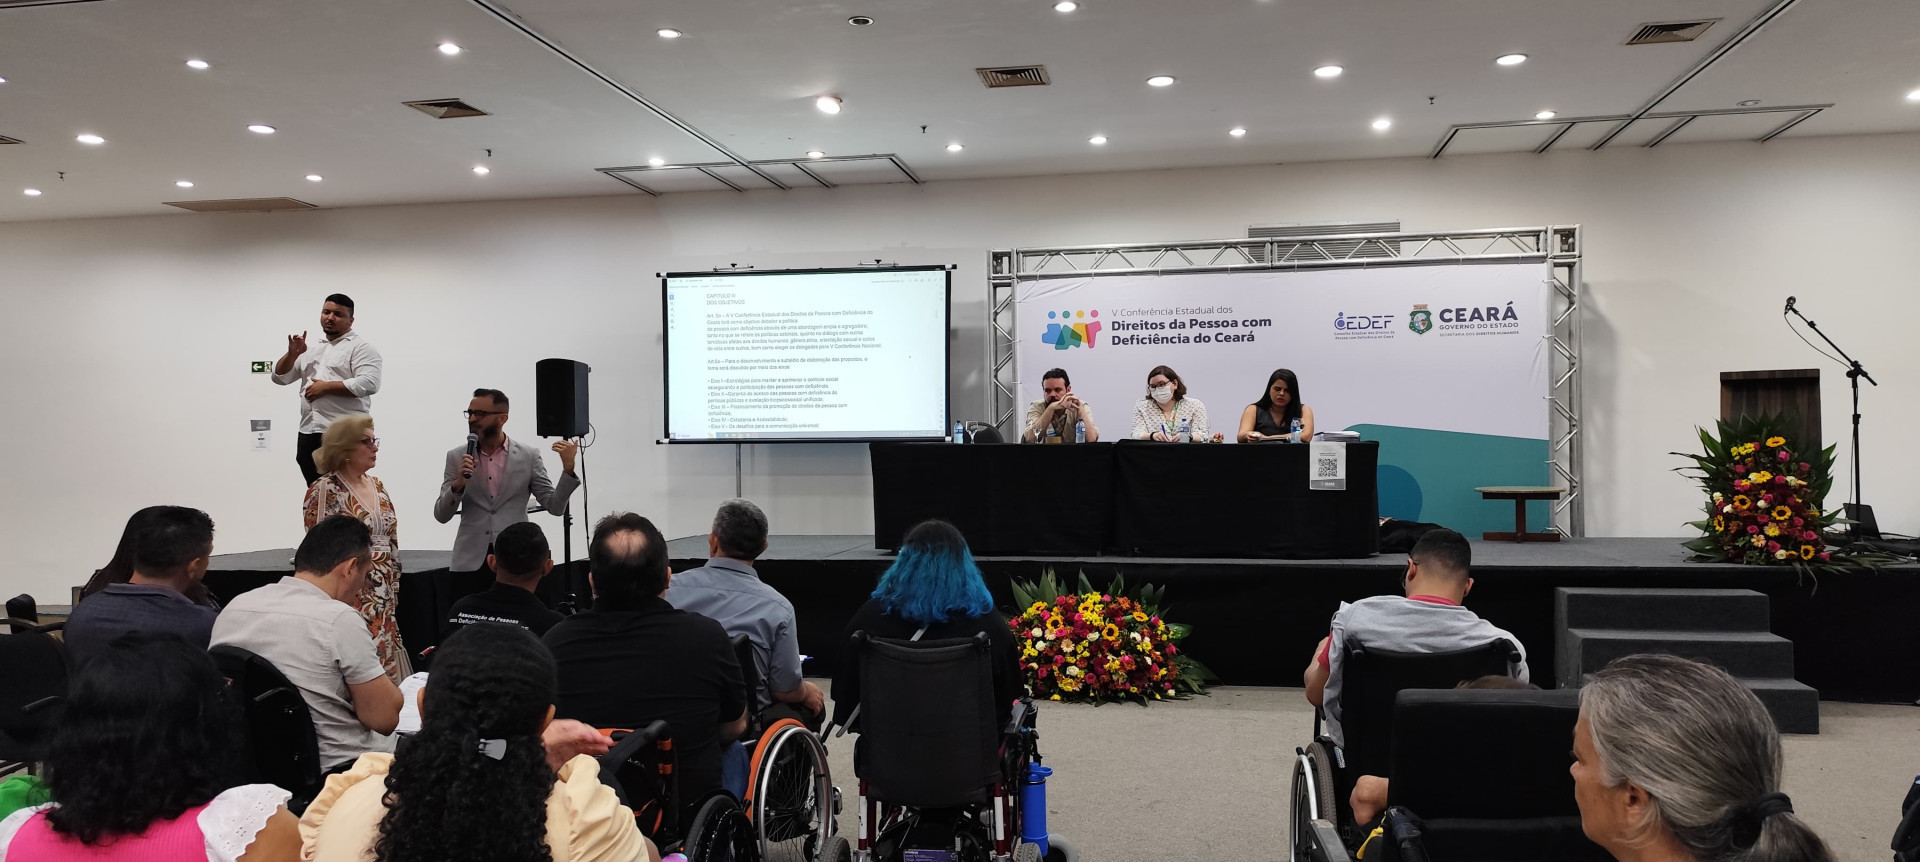 Conferência dos Direitos da Pessoa com Deficiência (Foto: Lara Vieira)